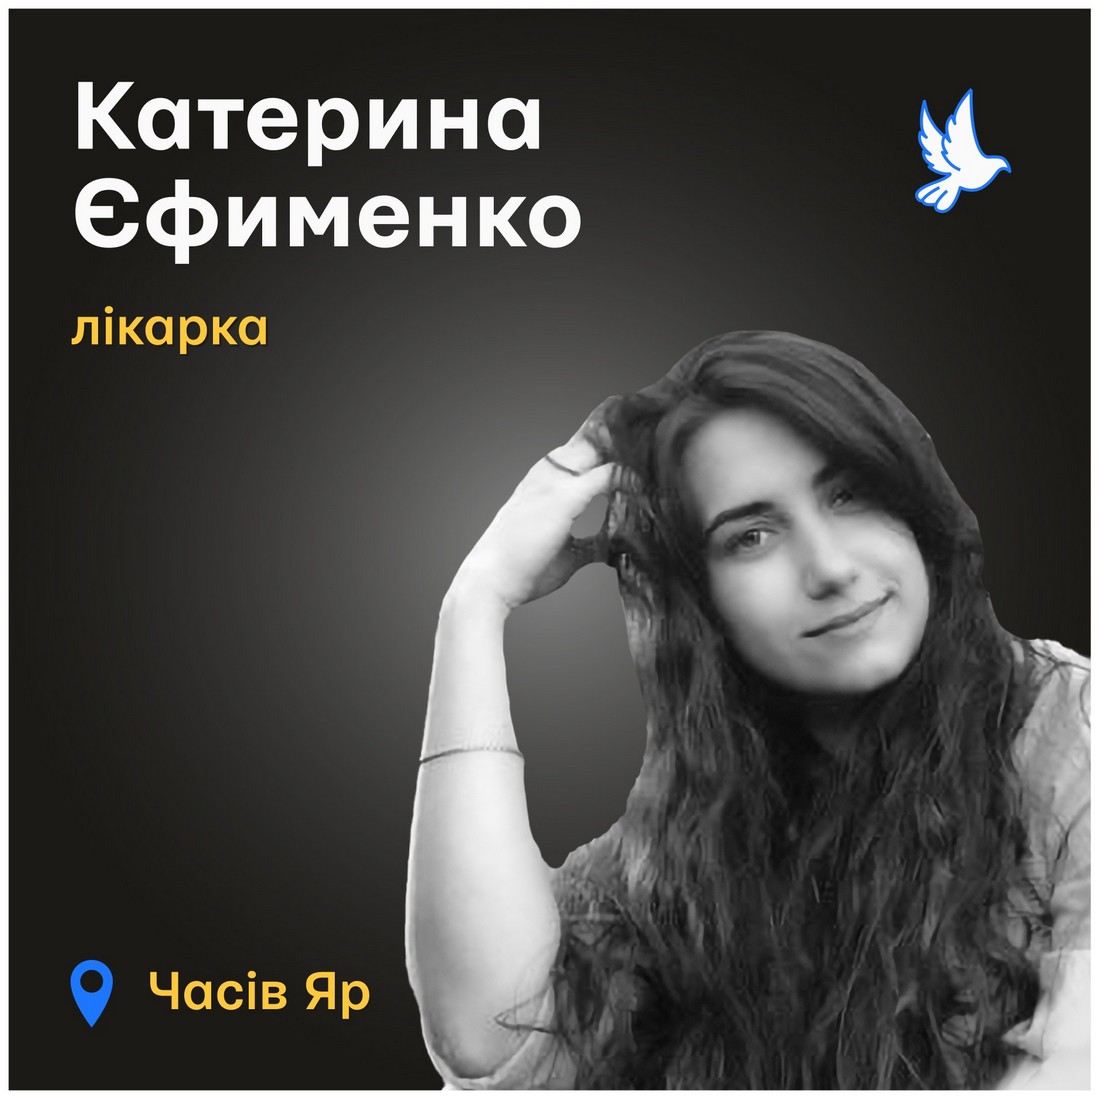 Меморіал: вбиті росією. Катерина Єфименко, 27 років, Часів Яр, травень